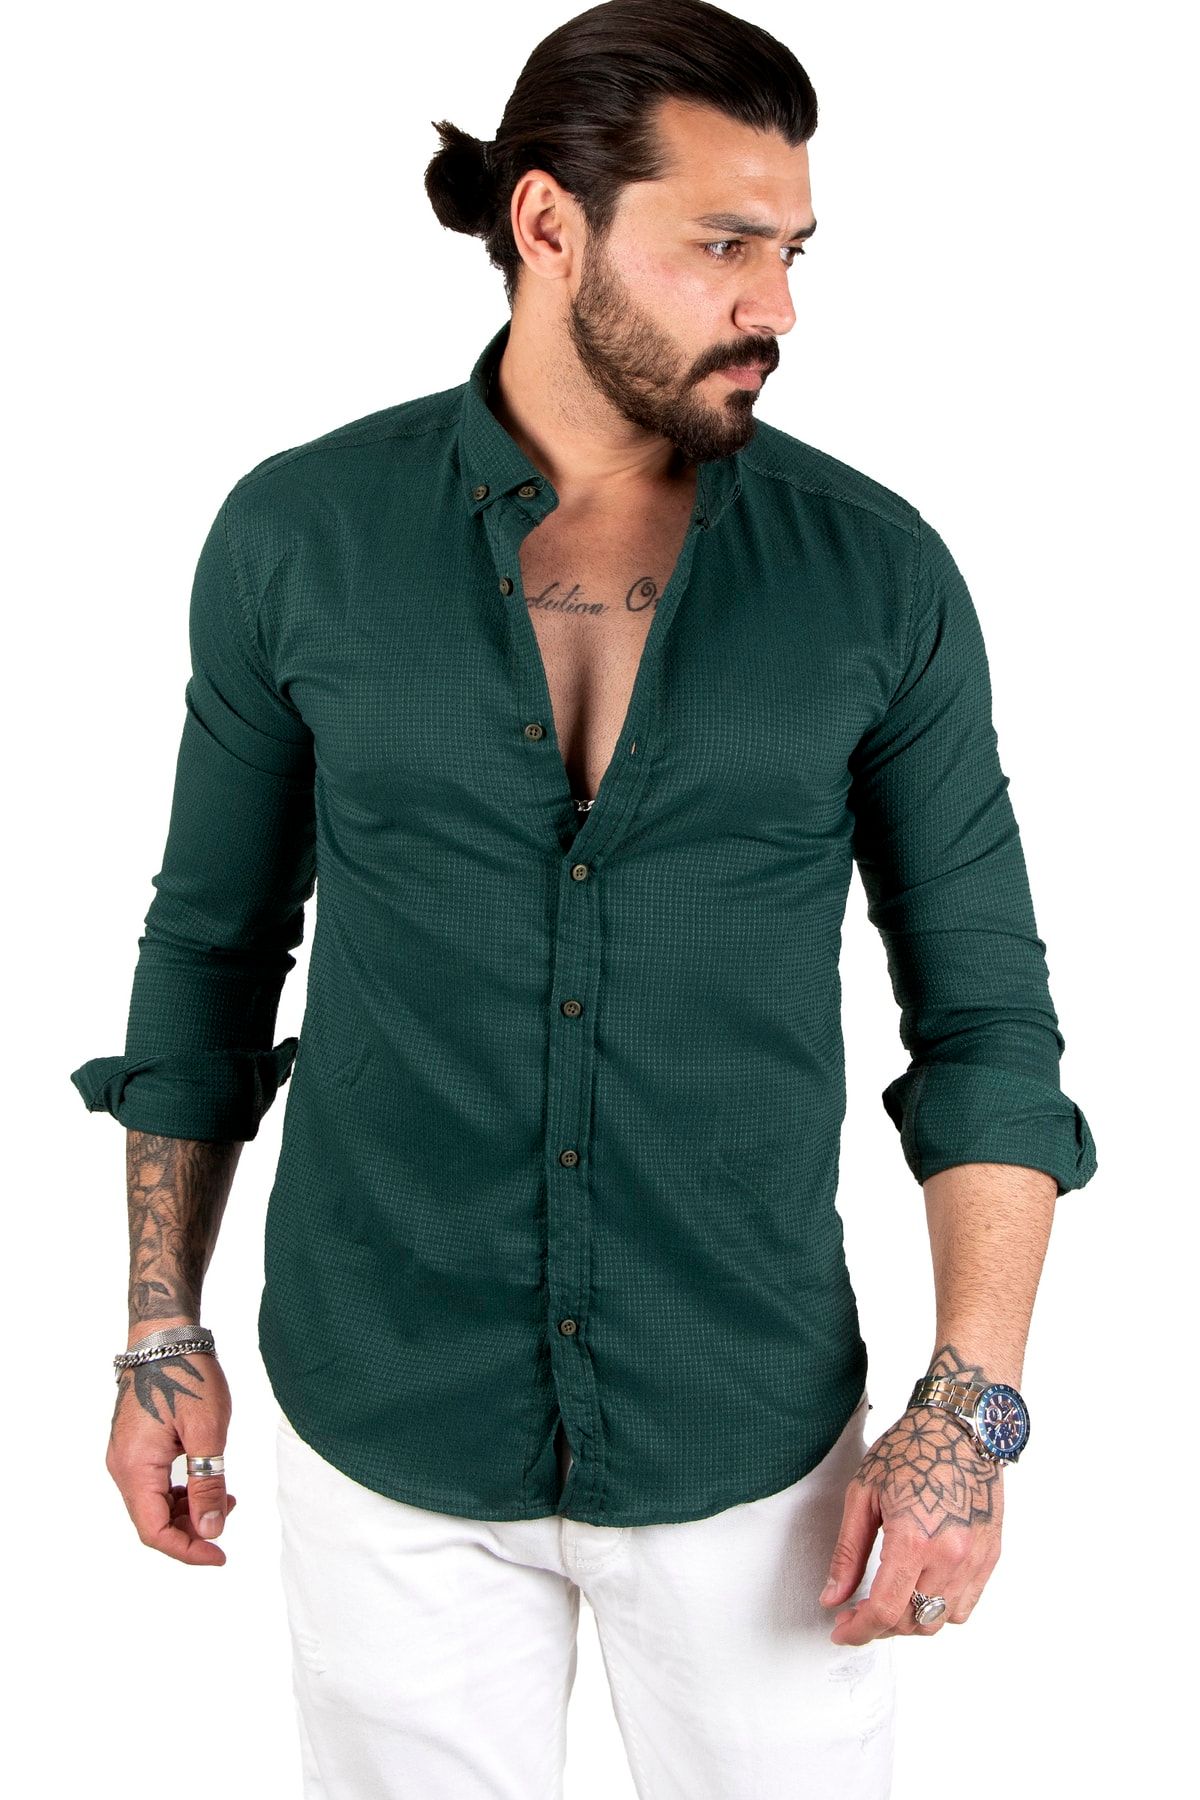 DeepSea Yeşil Noktalı Dar Kesim Düğmeli Likralı Uzun Kollu Erkek Gömlek 2001810